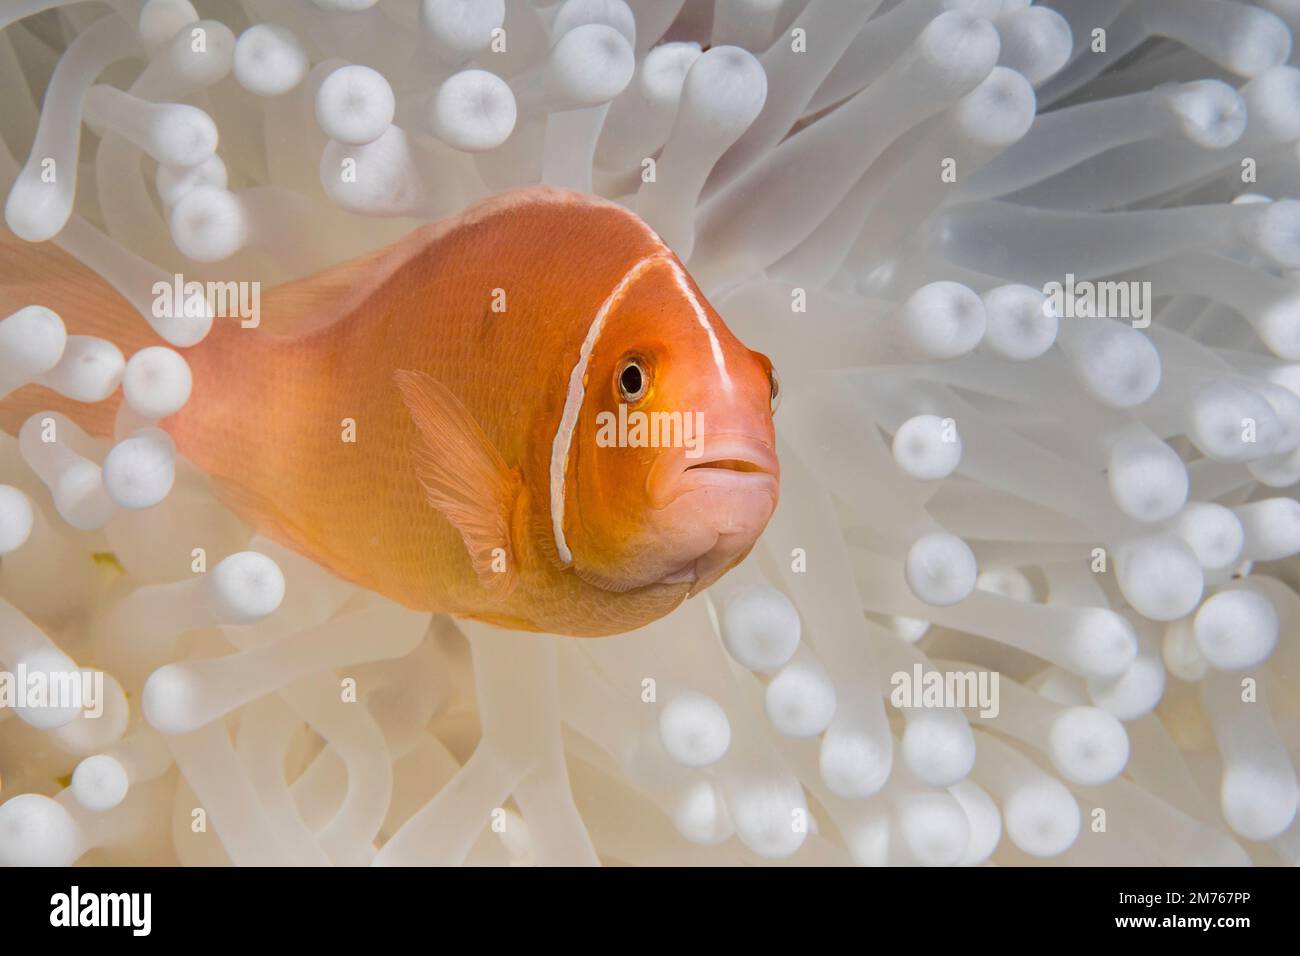 Questa rosa, anemonefish Amphiprion perideraion, è in un anemone, Heteractis magnifica, che è la sbianca dalle alte temperature degli oceani e stress da calore, Foto Stock